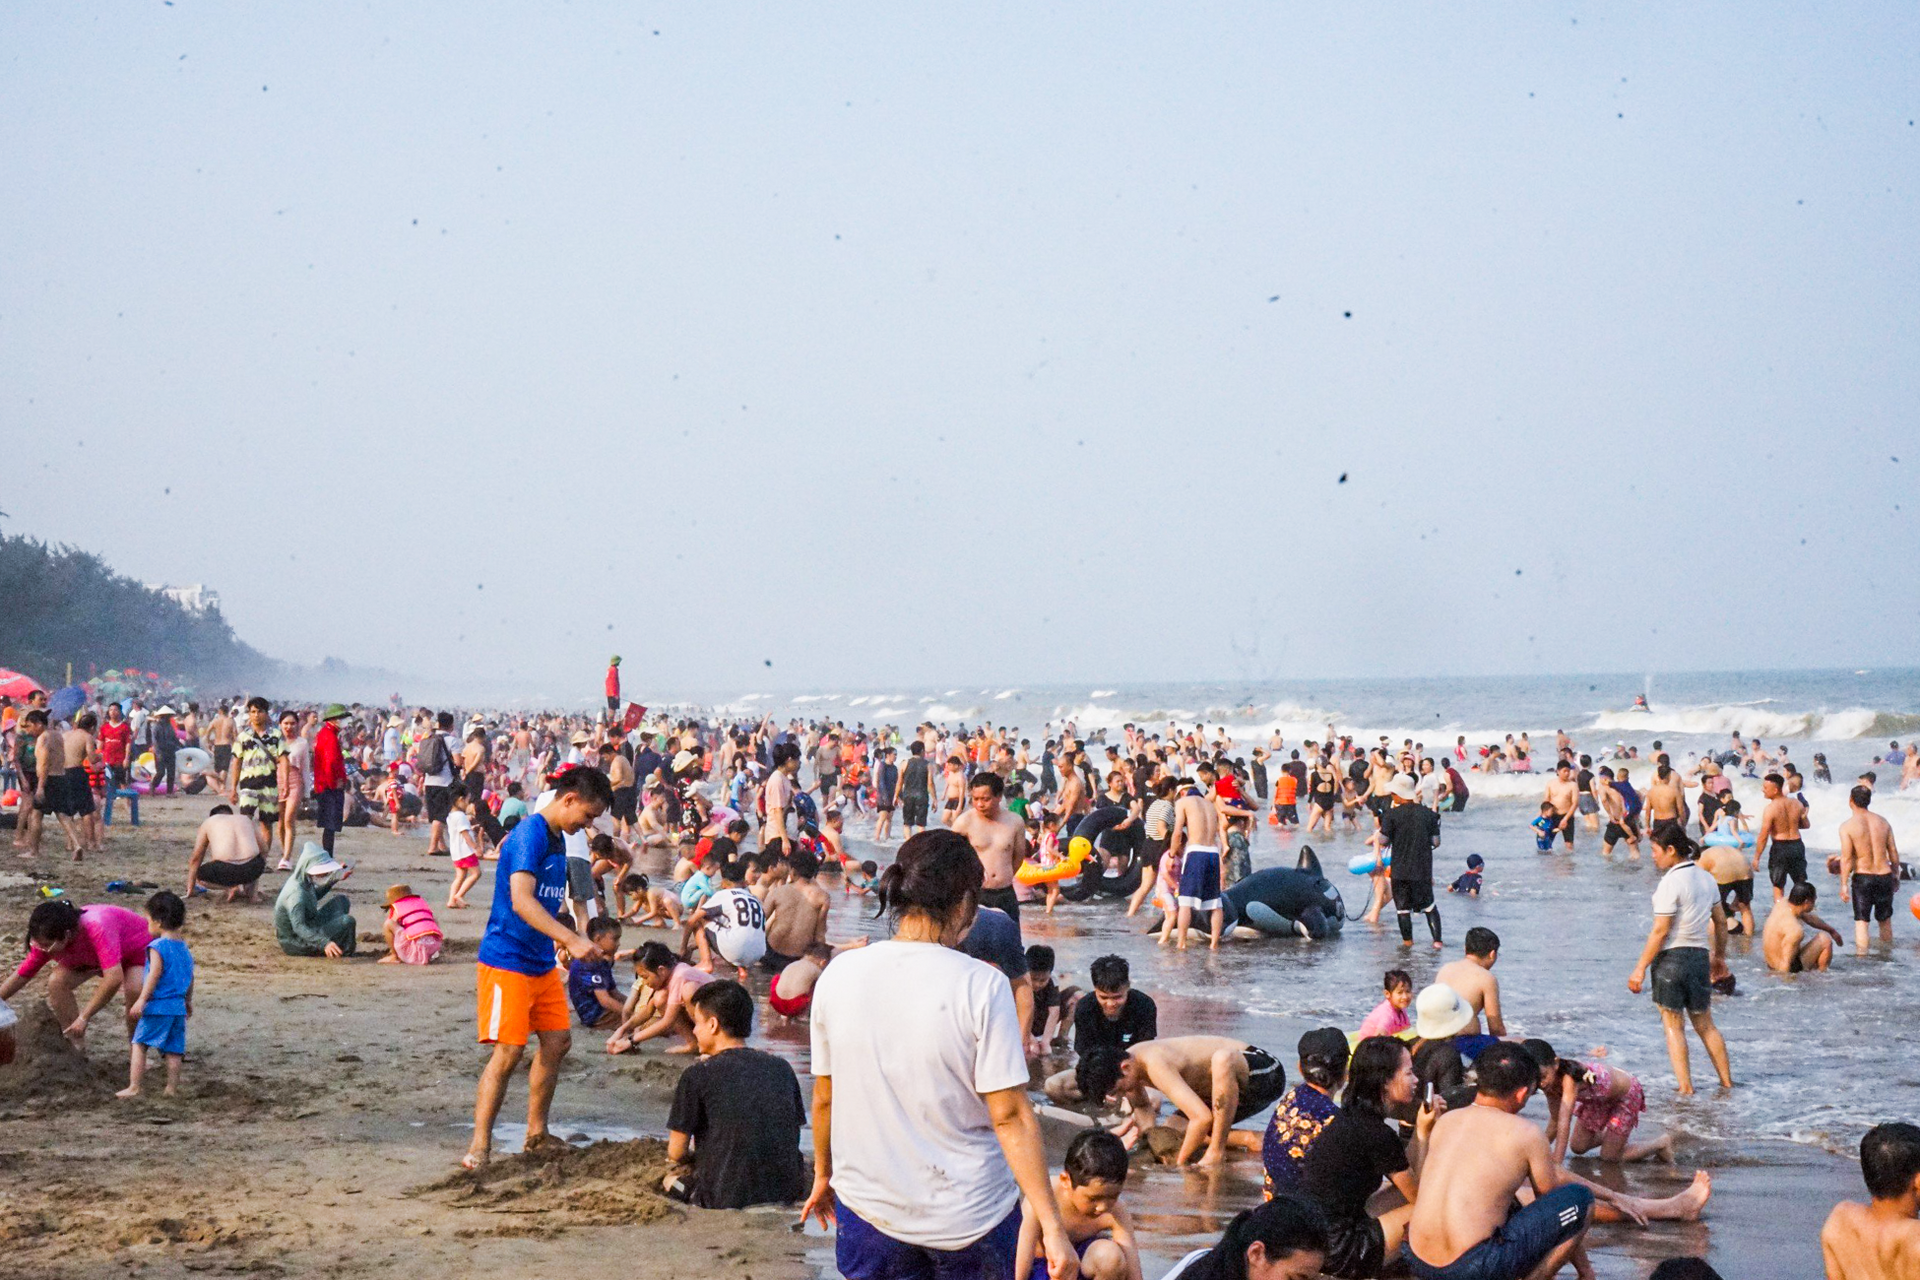 Vạn người đổ về bãi biển Sầm Sơn trong ngày nắng nóng đỉnh điểm- Ảnh 3.